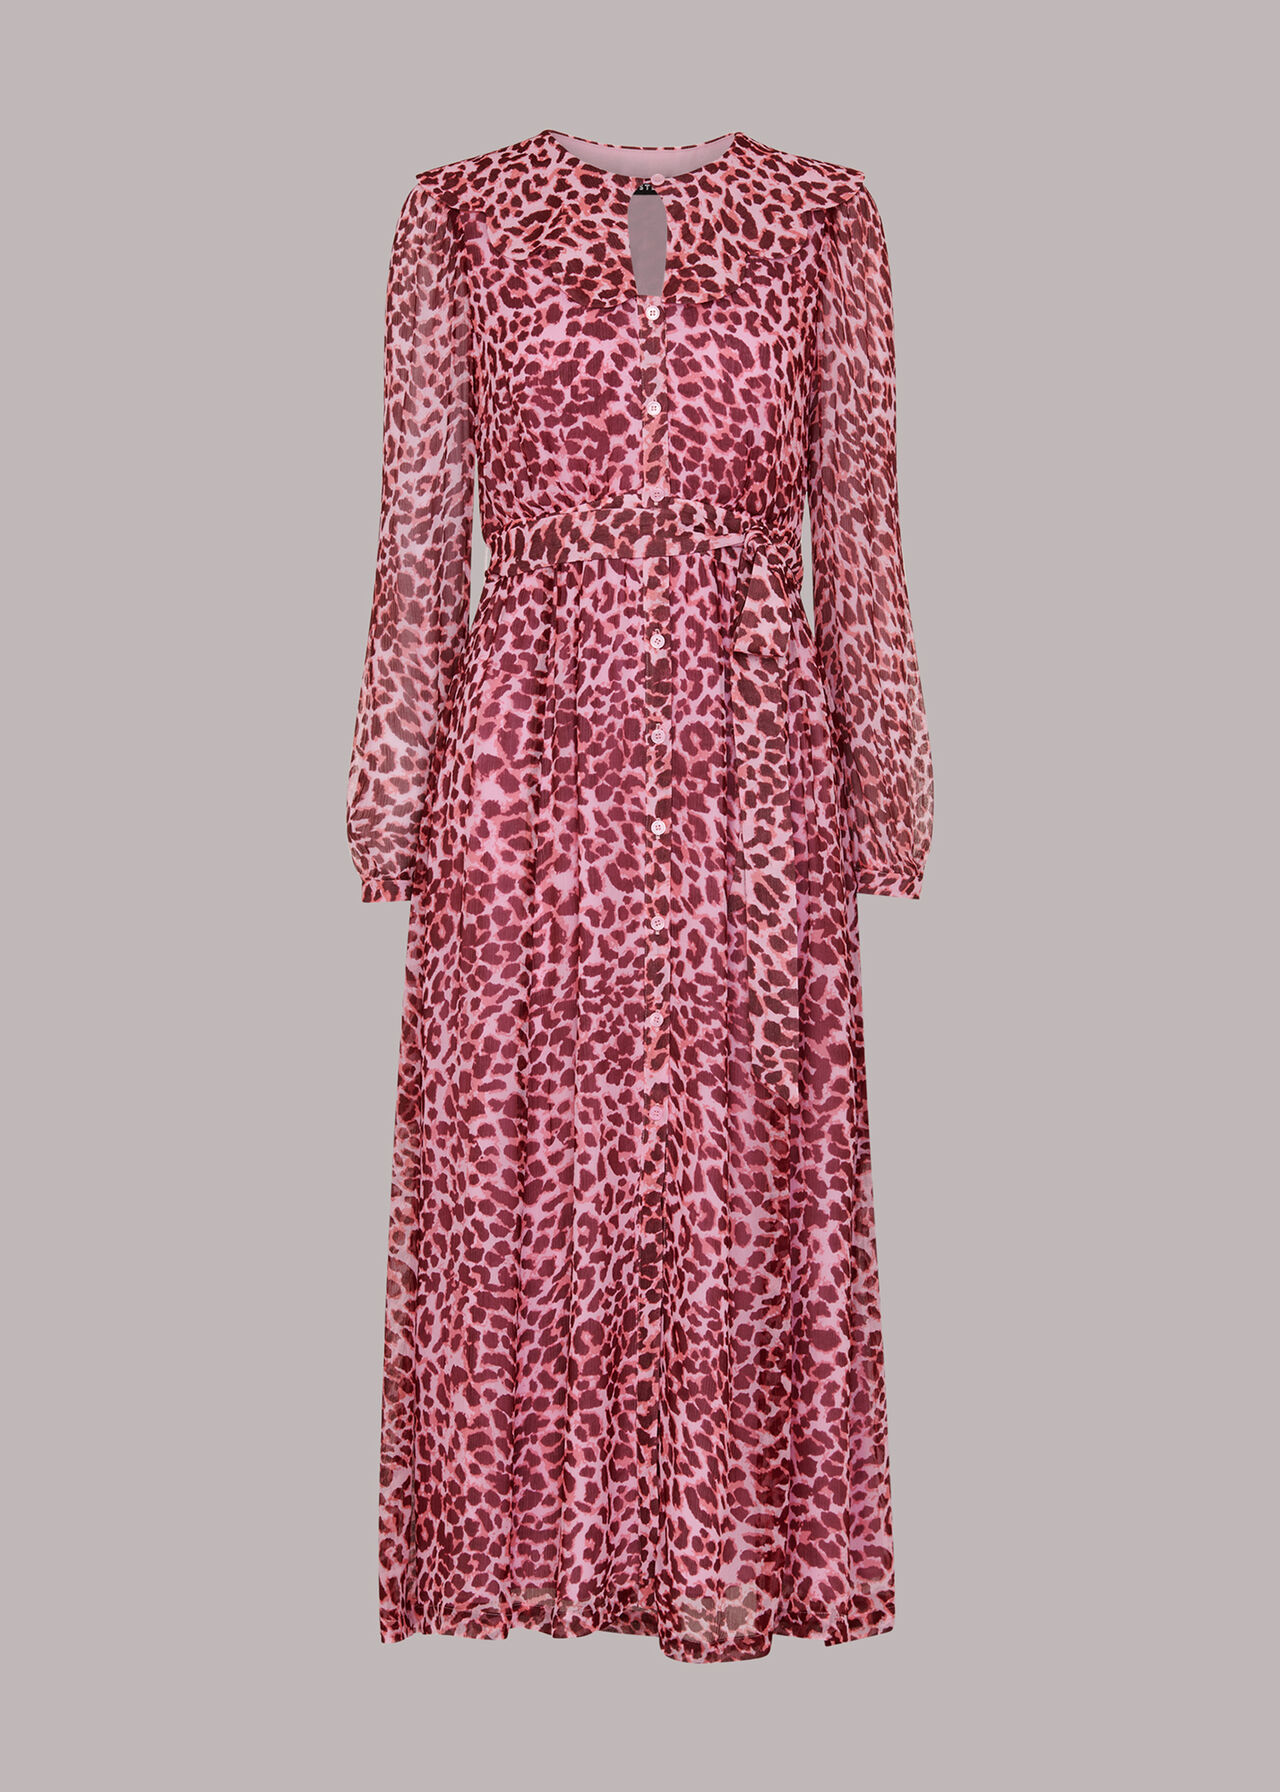 Abstract Cheetah Midi Dress